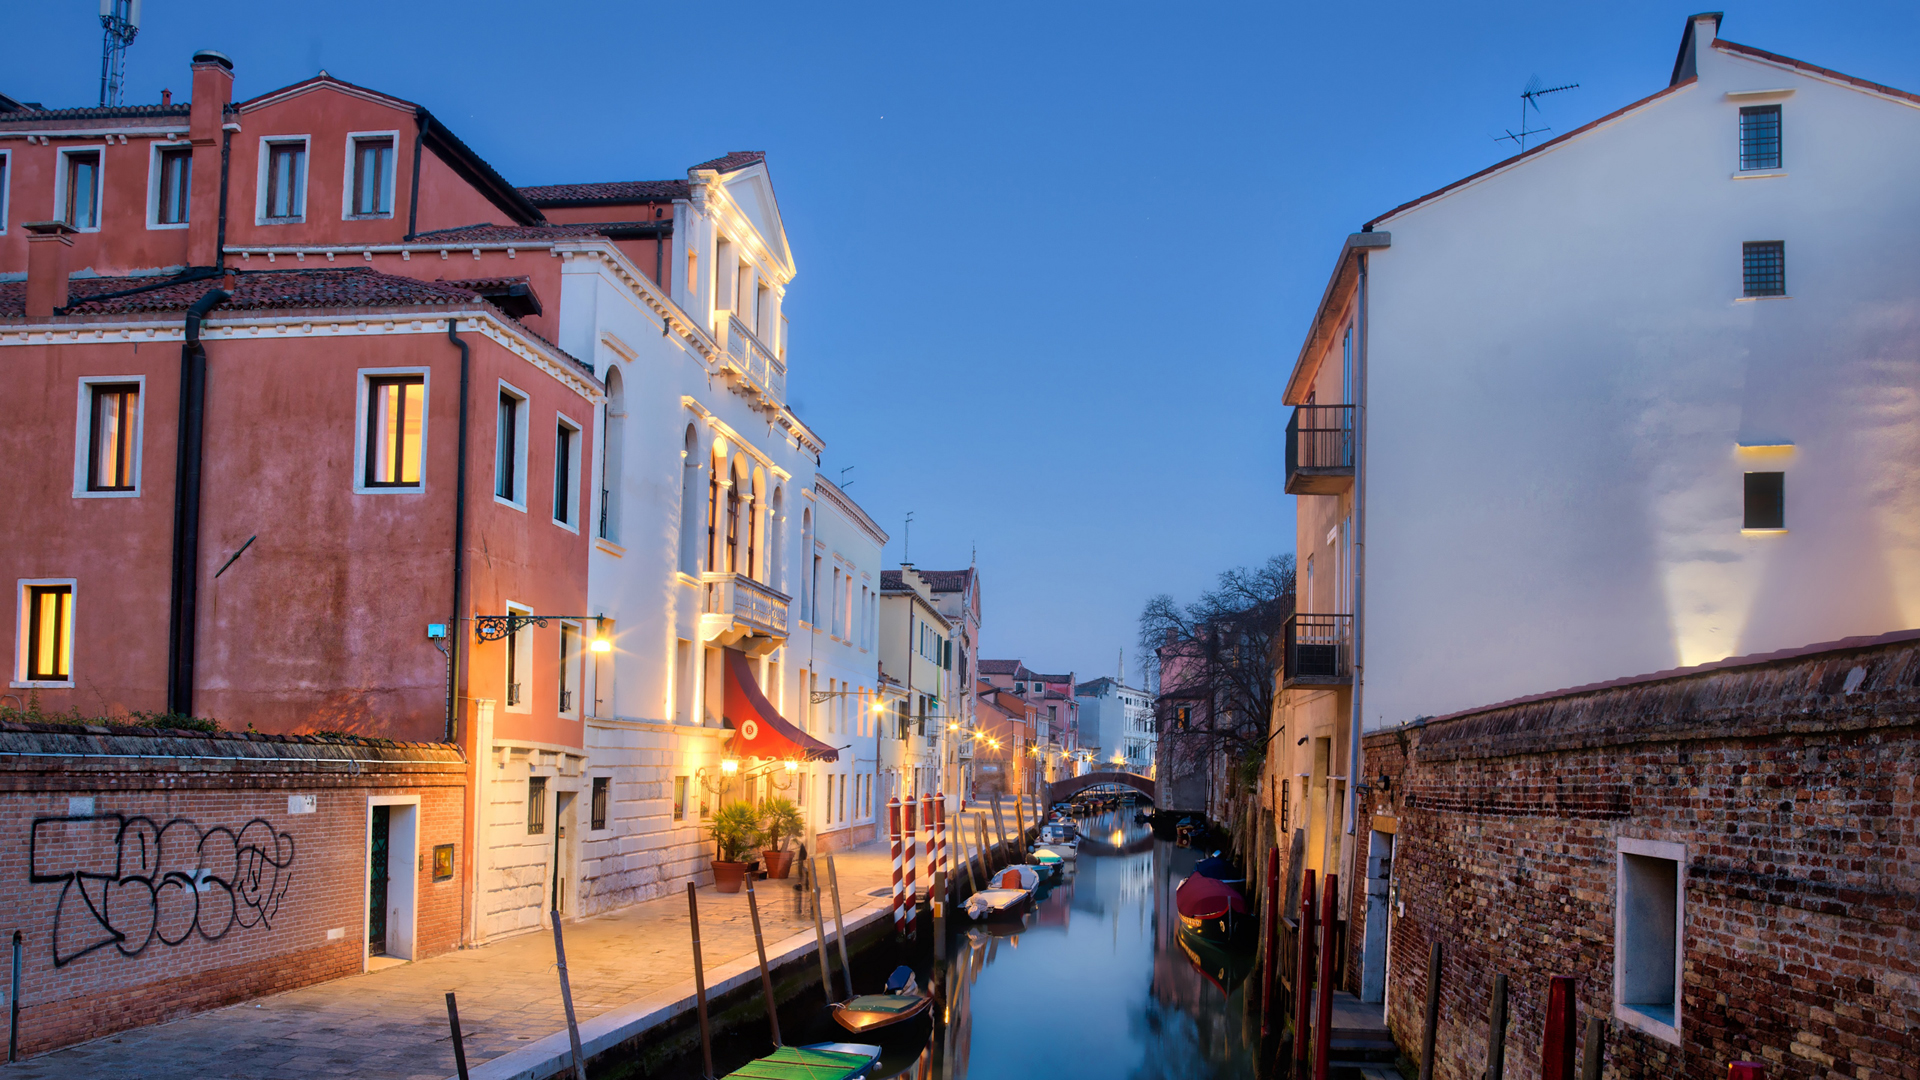 意大利，威尼斯，城市景观，建筑，房子，水，运河，船，路灯，风景高清壁纸